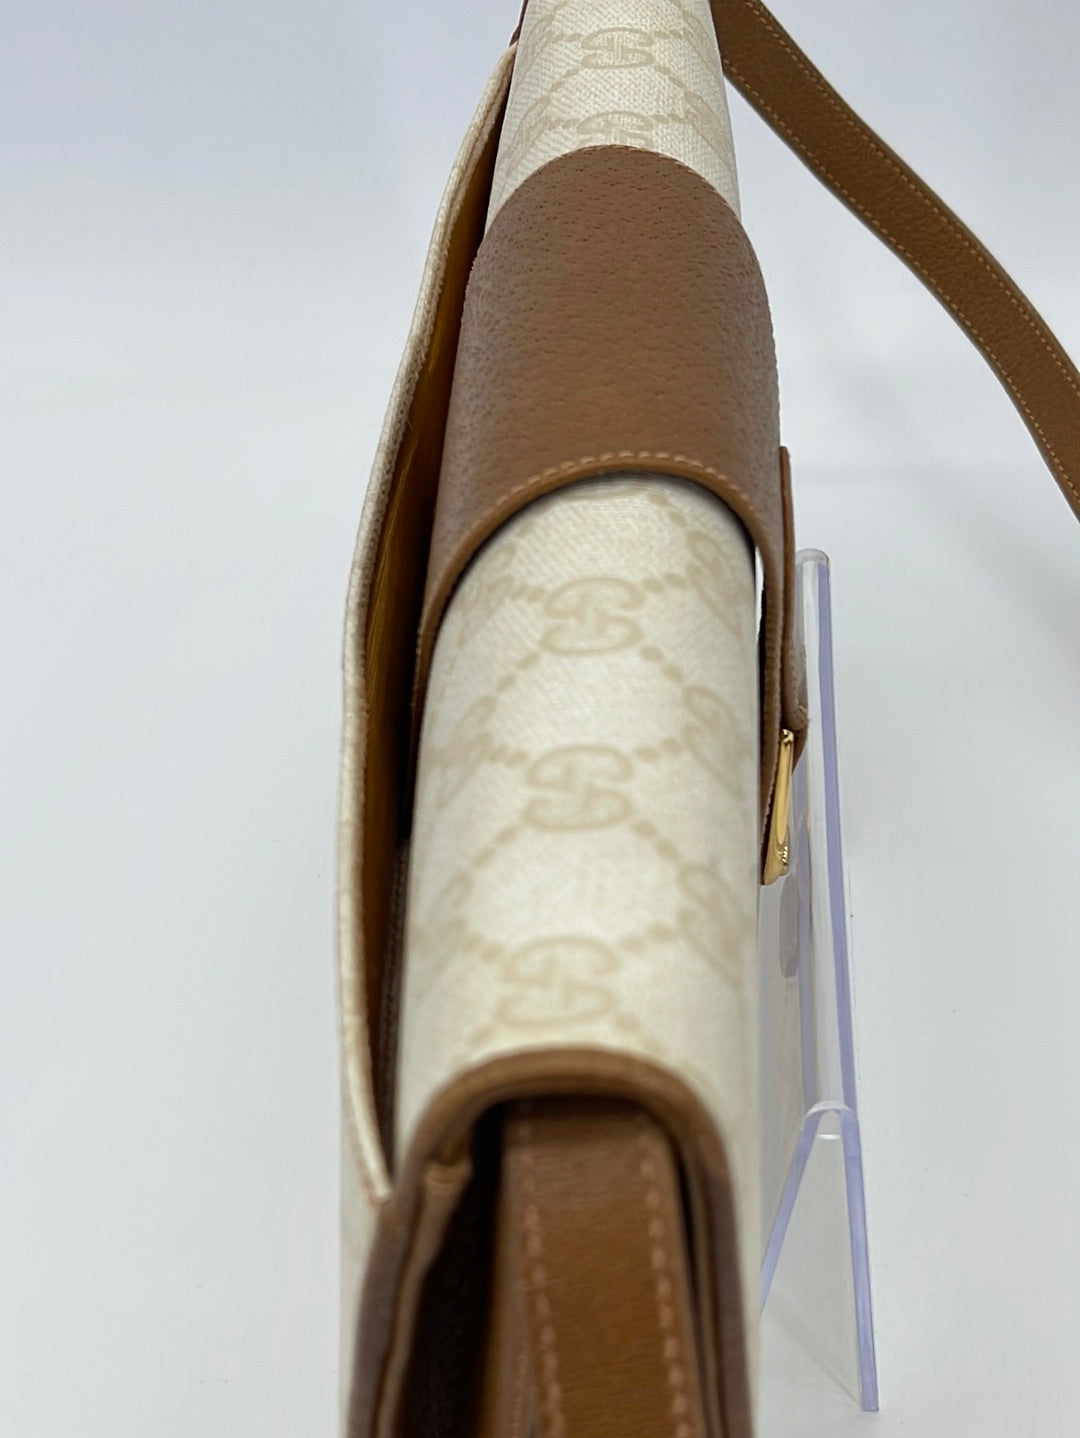 450946 GG Supreme Belt Bag – Keeks Designer Handbags